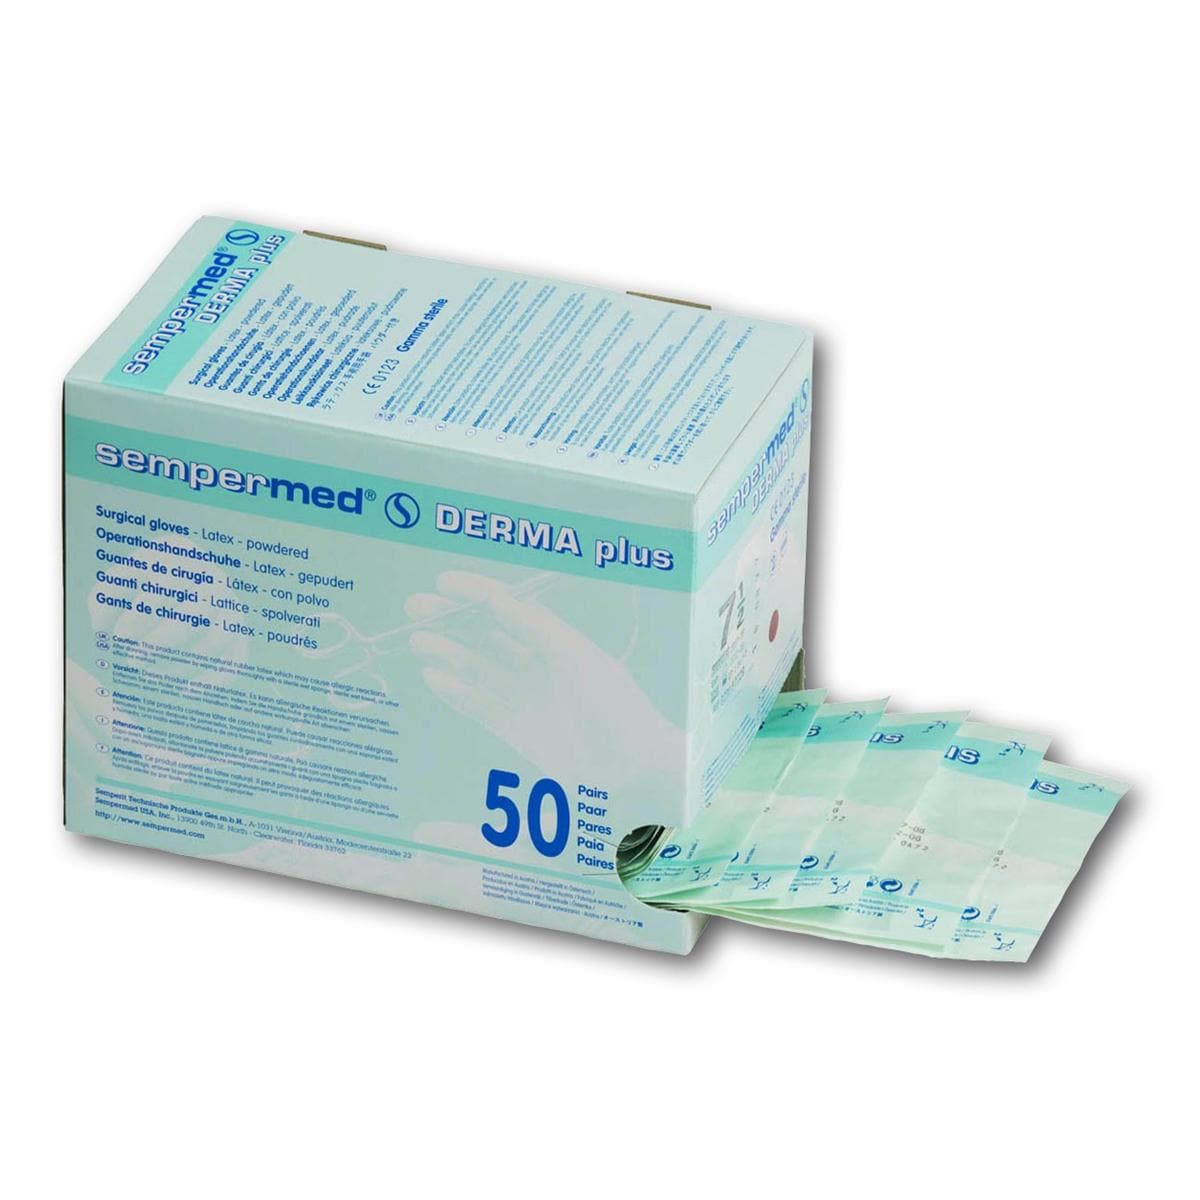 Sempermed® Derma Plus gepudert - Größe 8, Packung 50 Paar